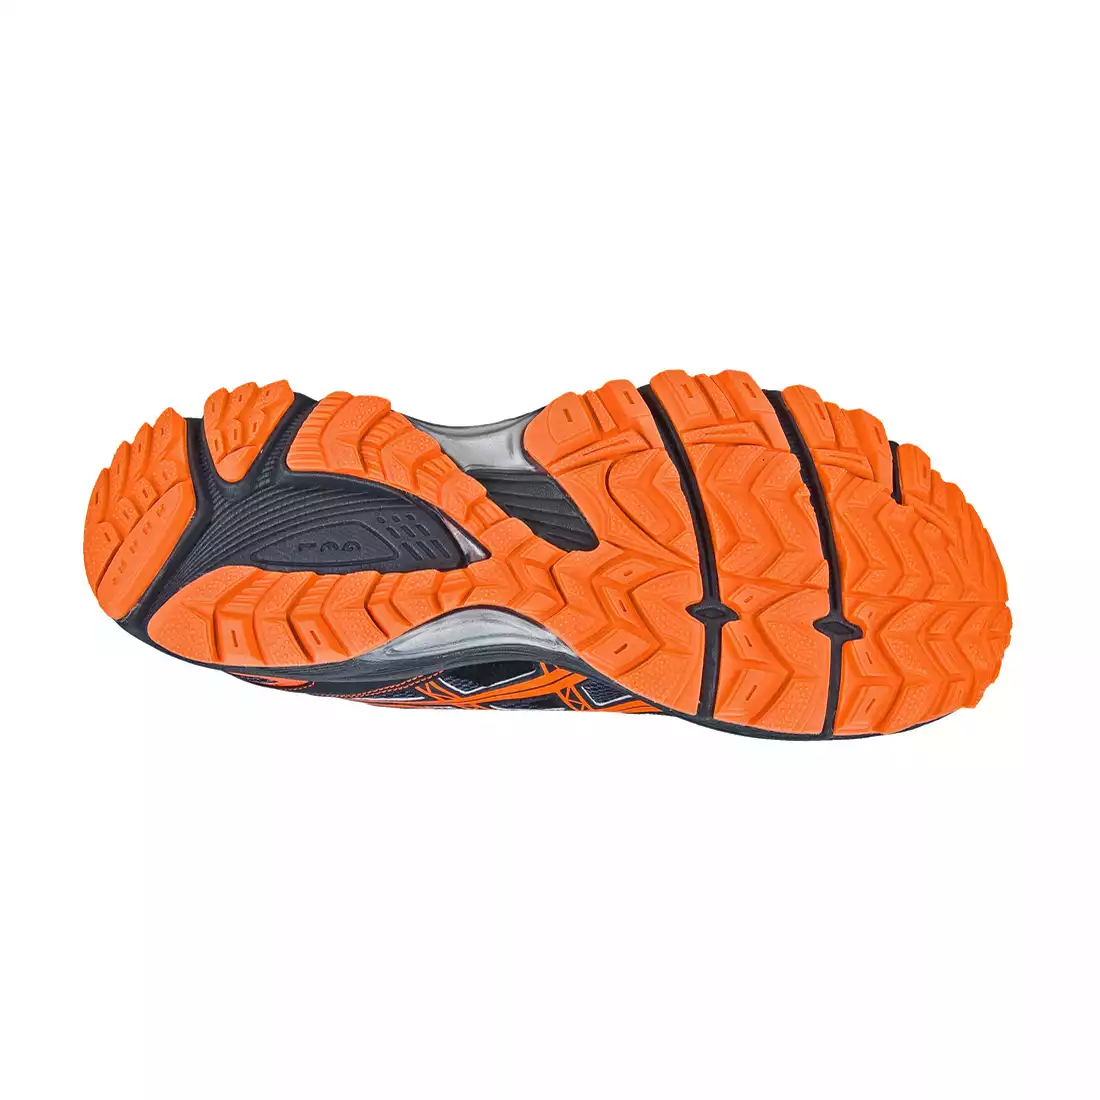 ASICS GEL ENDURO 9 - buty do biegania 7932, kolor: Czarno-pomarańczowy